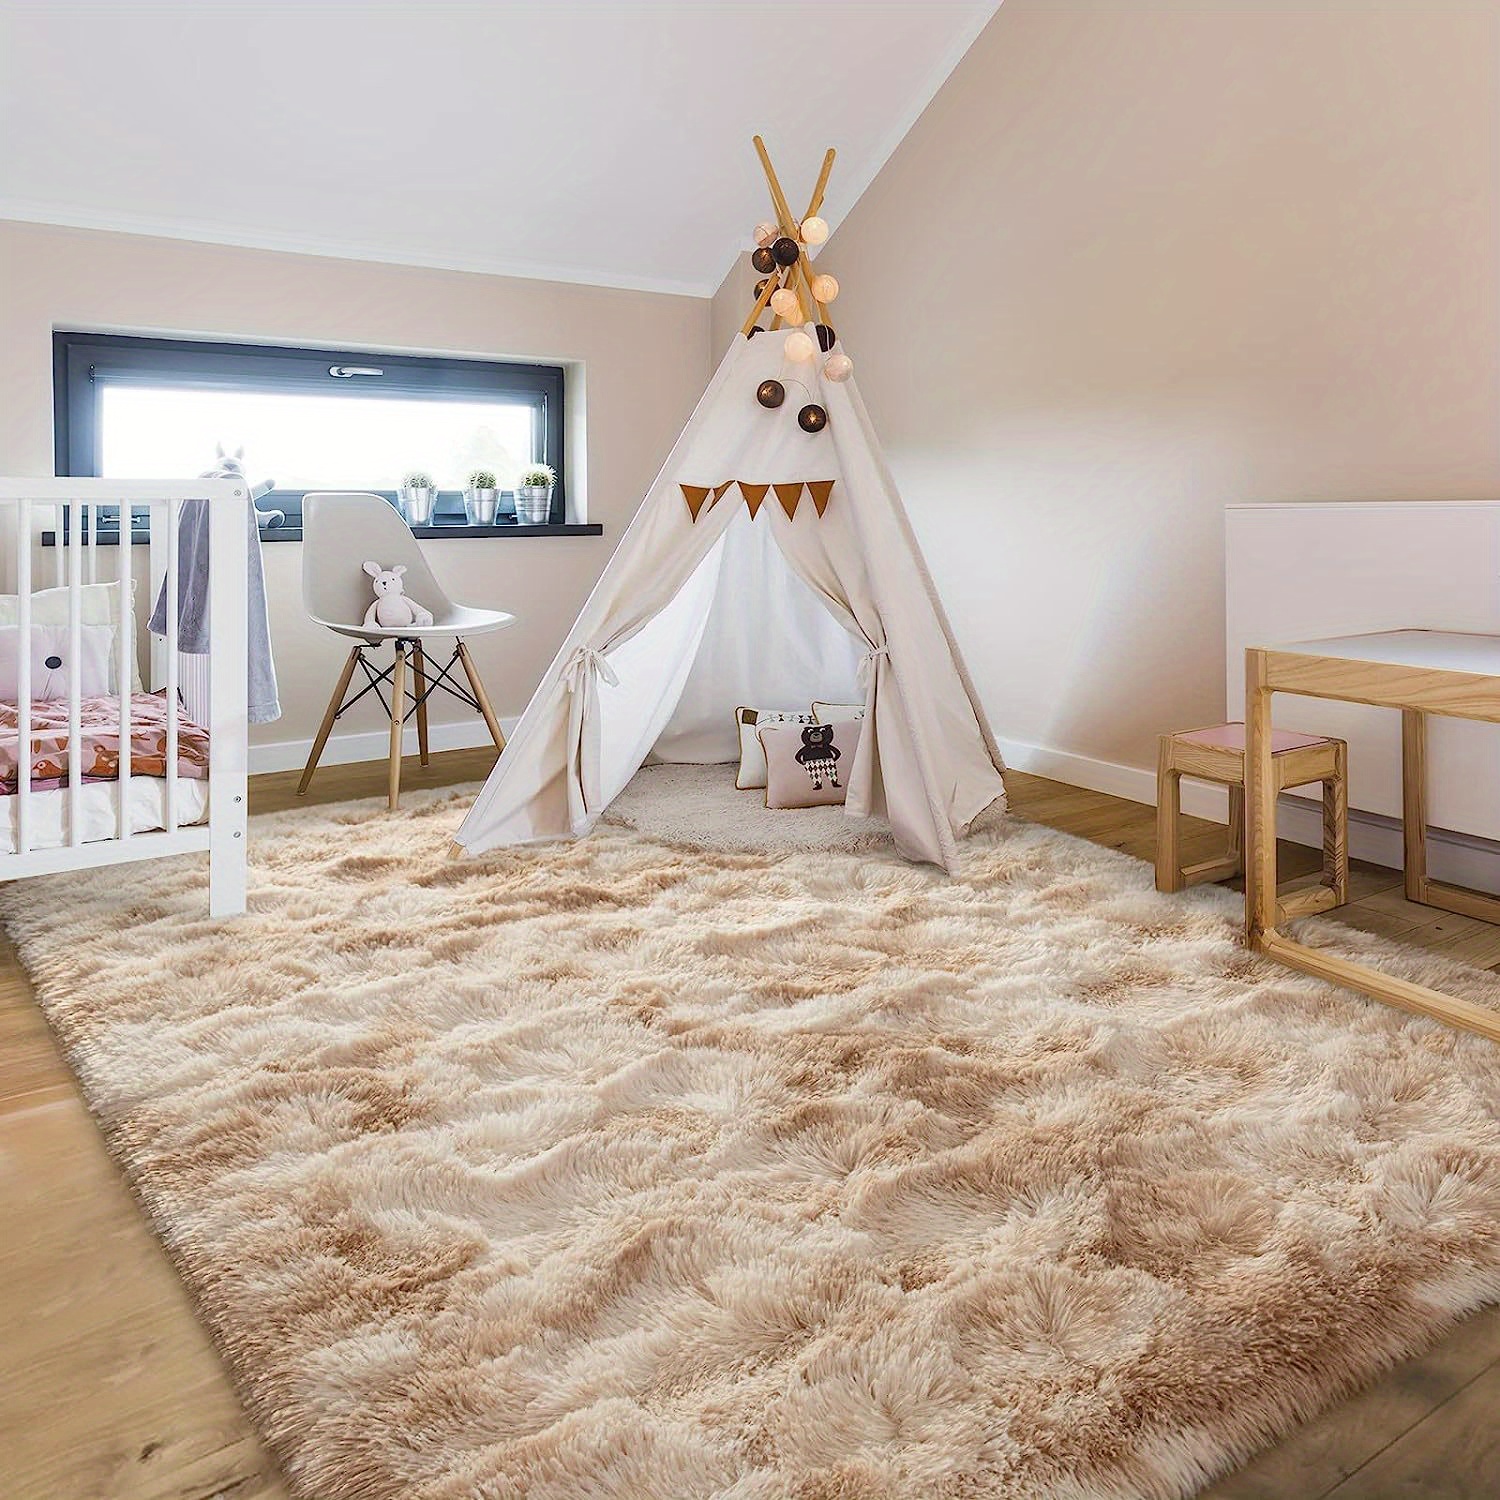 Oval Center Teppich für Wohnzimmer Große Teppiche Plüsch Flauschige  Kinderzimmer Kinder Bett Zimmer Haarig weiche Fußmatten Wohnkultur